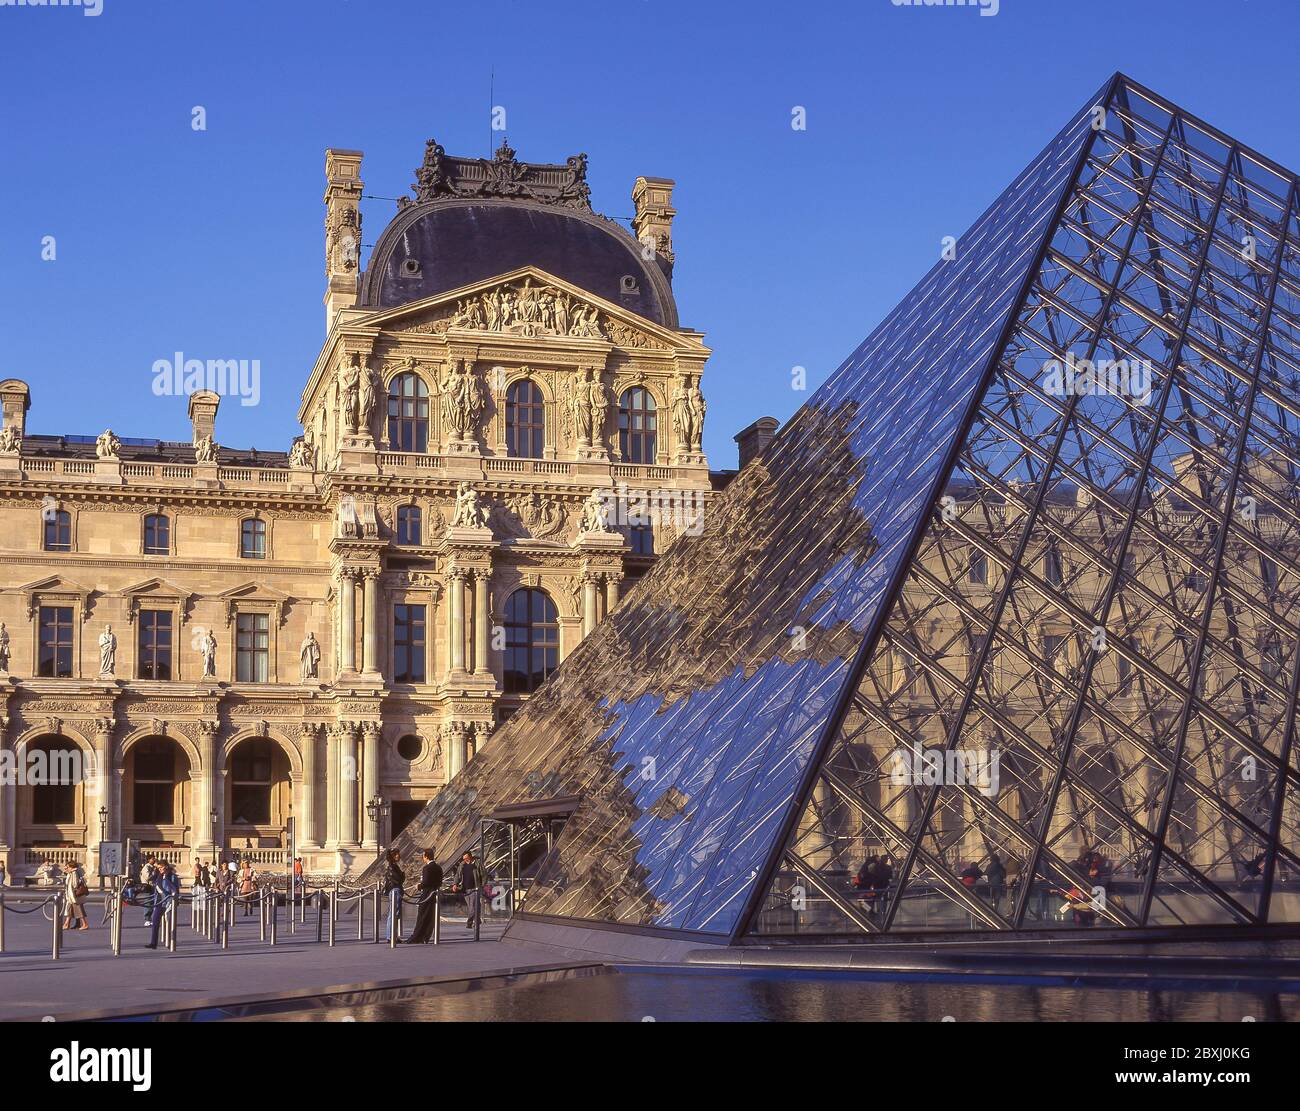 The Louvre Museum (Musee du Louvre) and Leoh Ming Pyramid, Place du Carrousel, Paris, Île-de-France, France Stock Photo